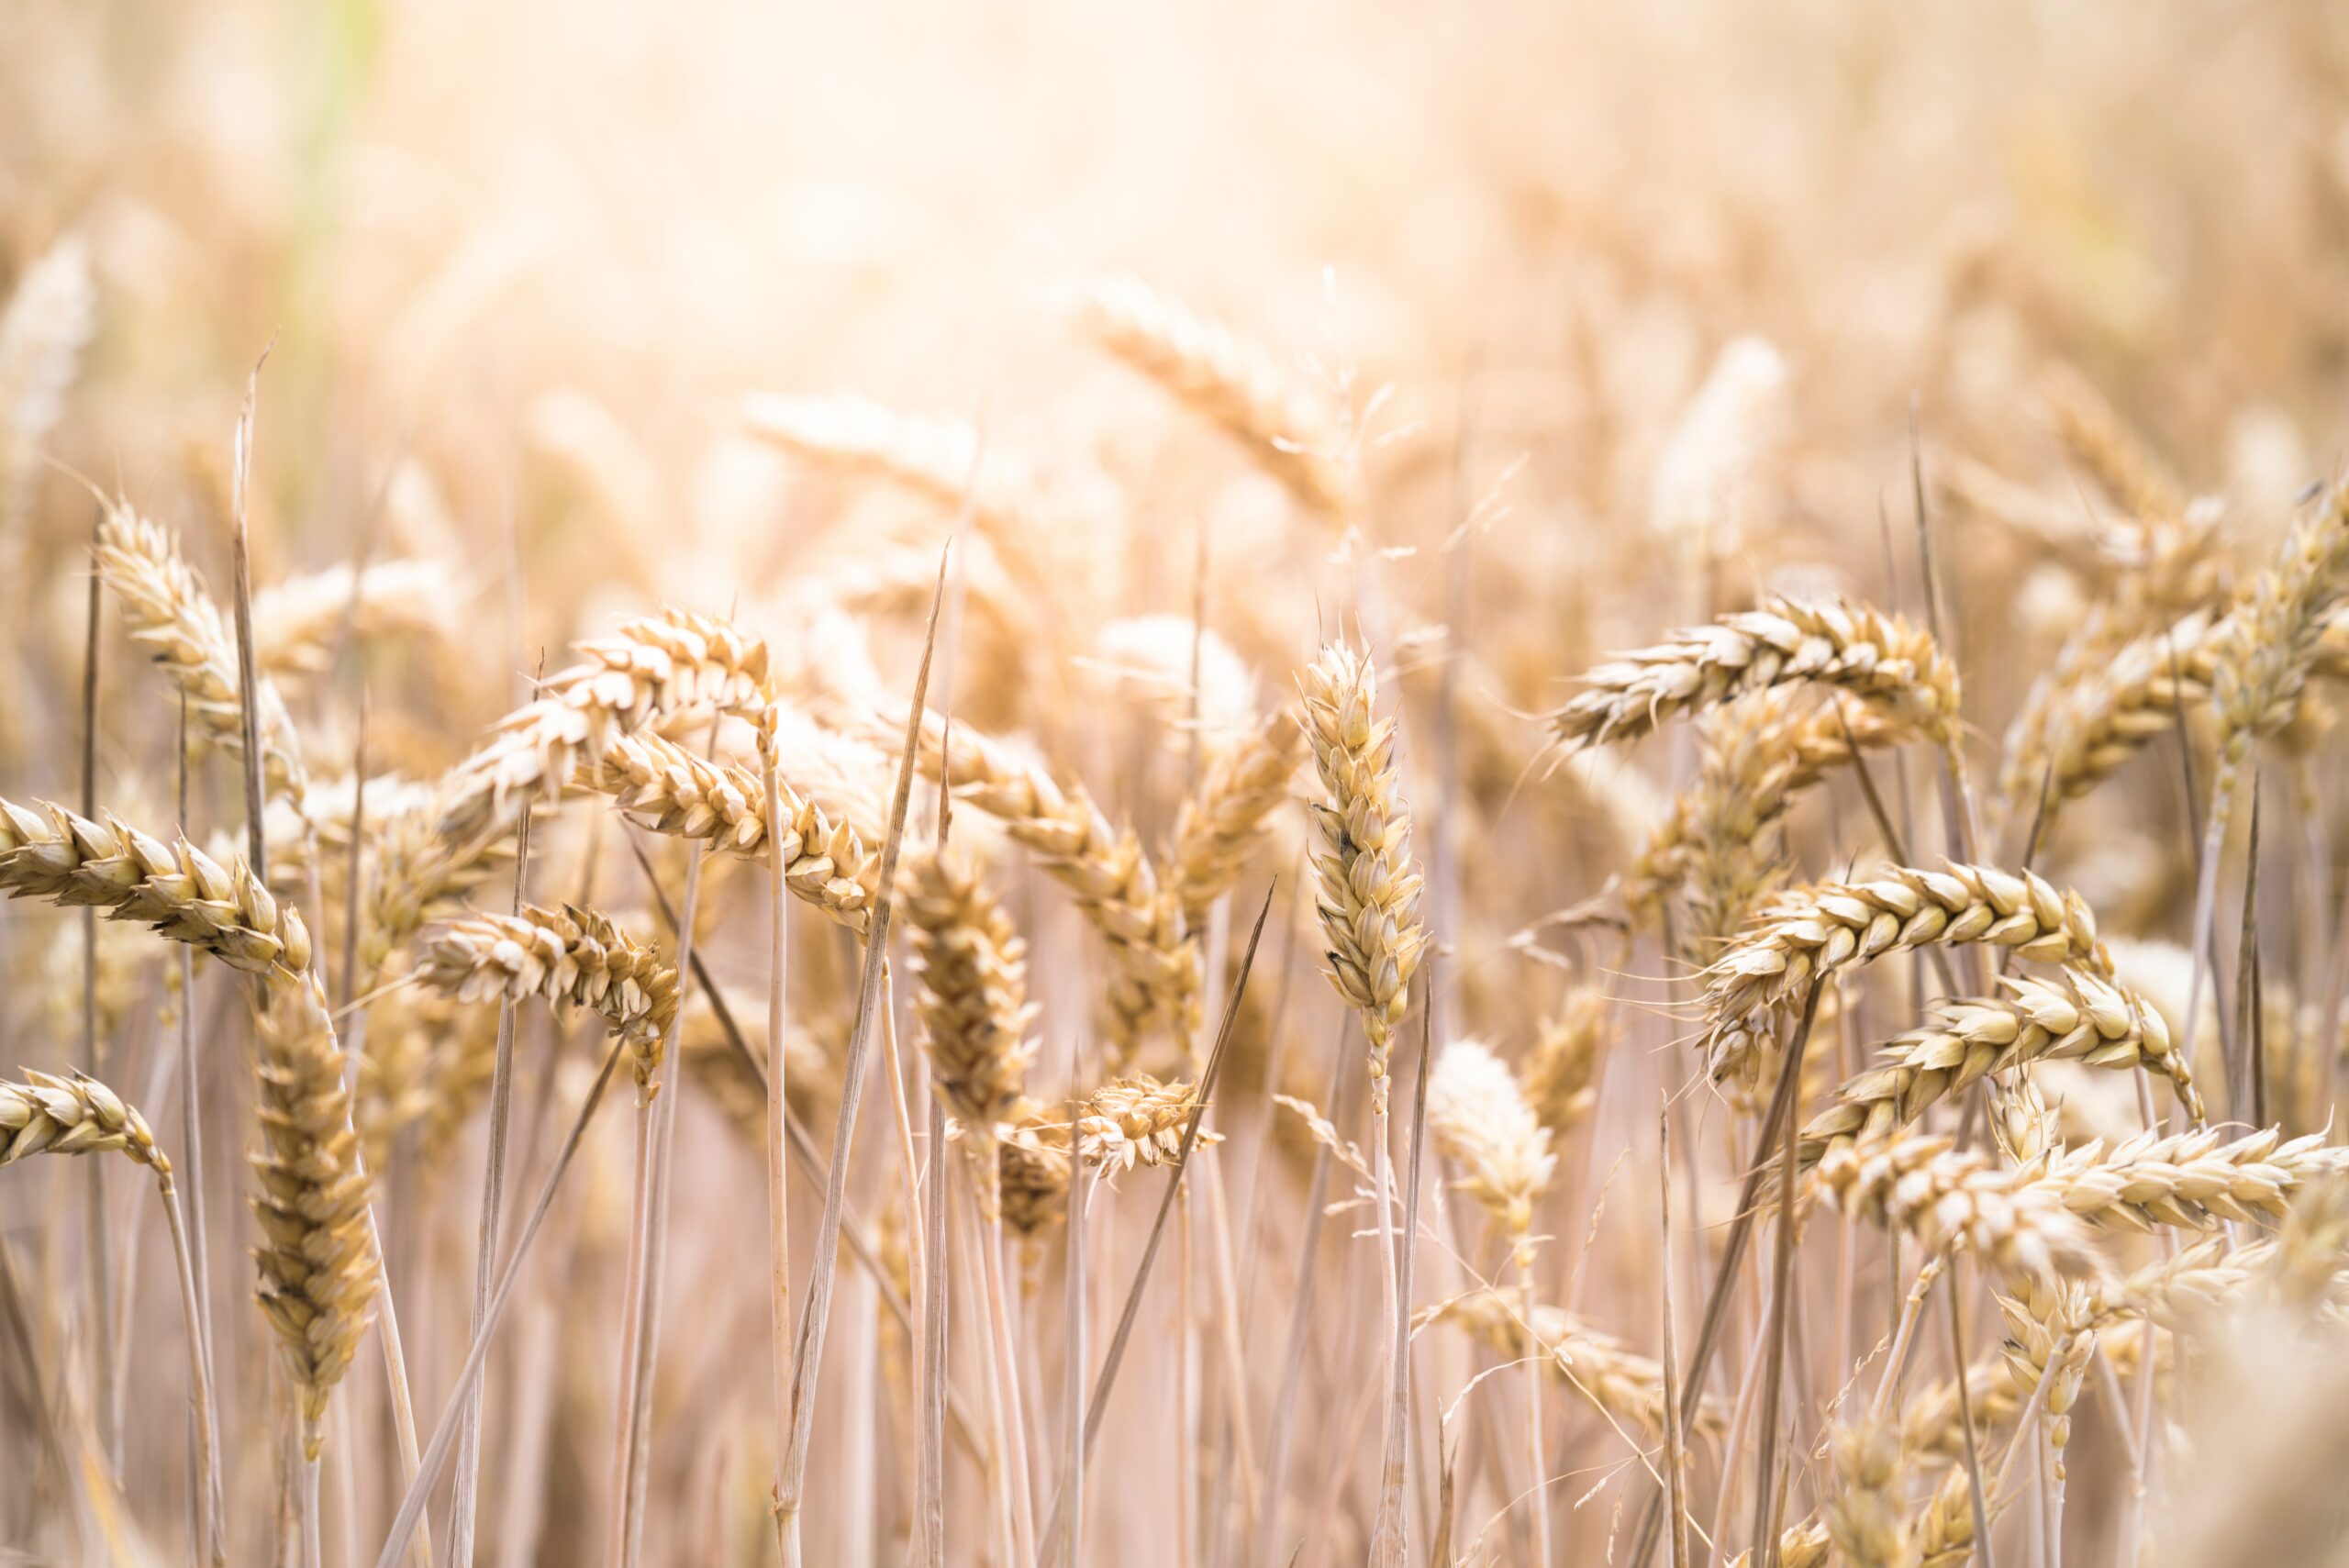 vignette - Les bas niveaux de rendement du blé observés en 2016 seront-ils plus fréquents dans les années à venir ?